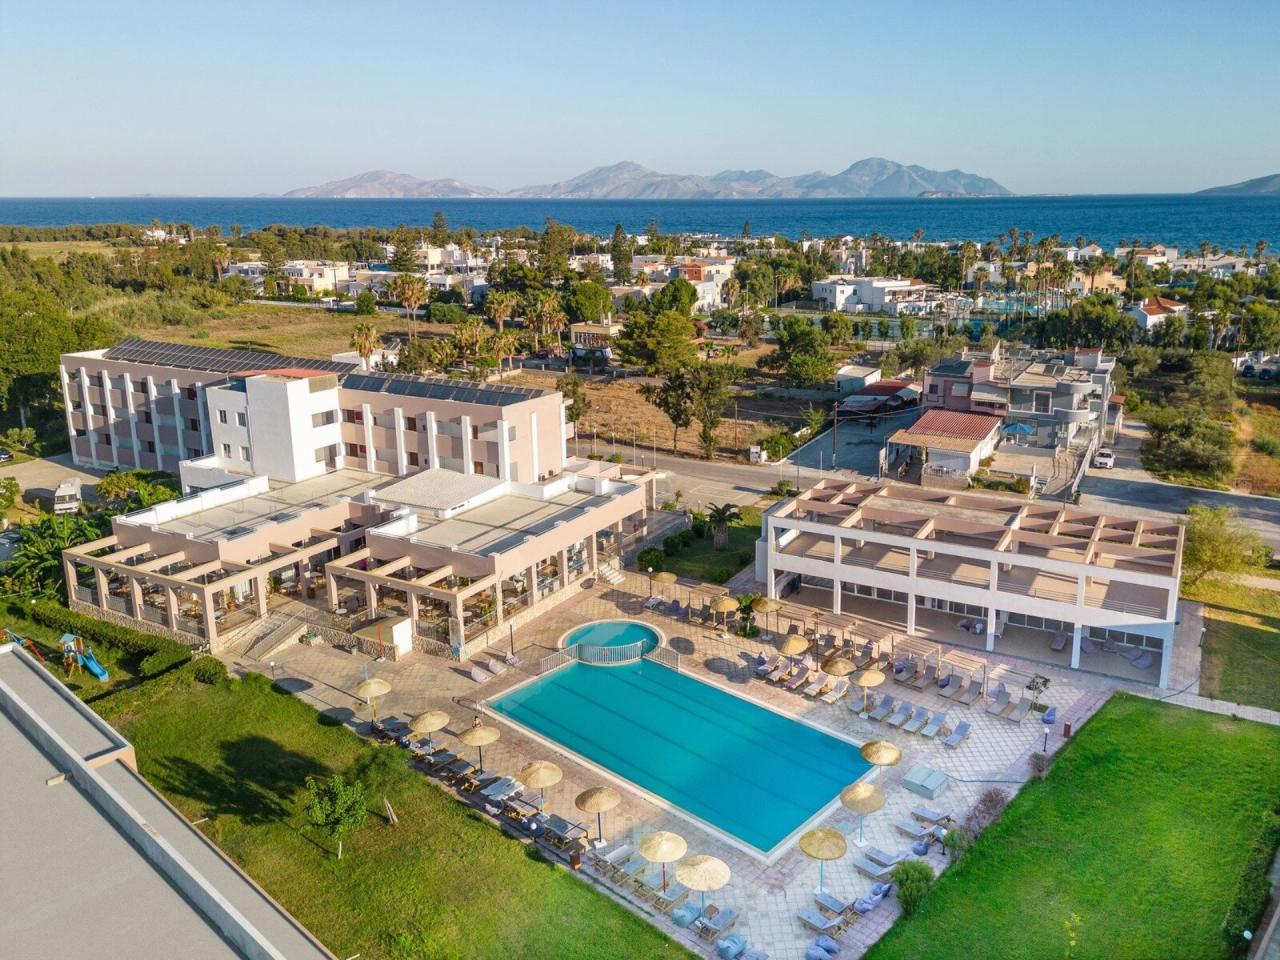 Aegean Bay Hotel